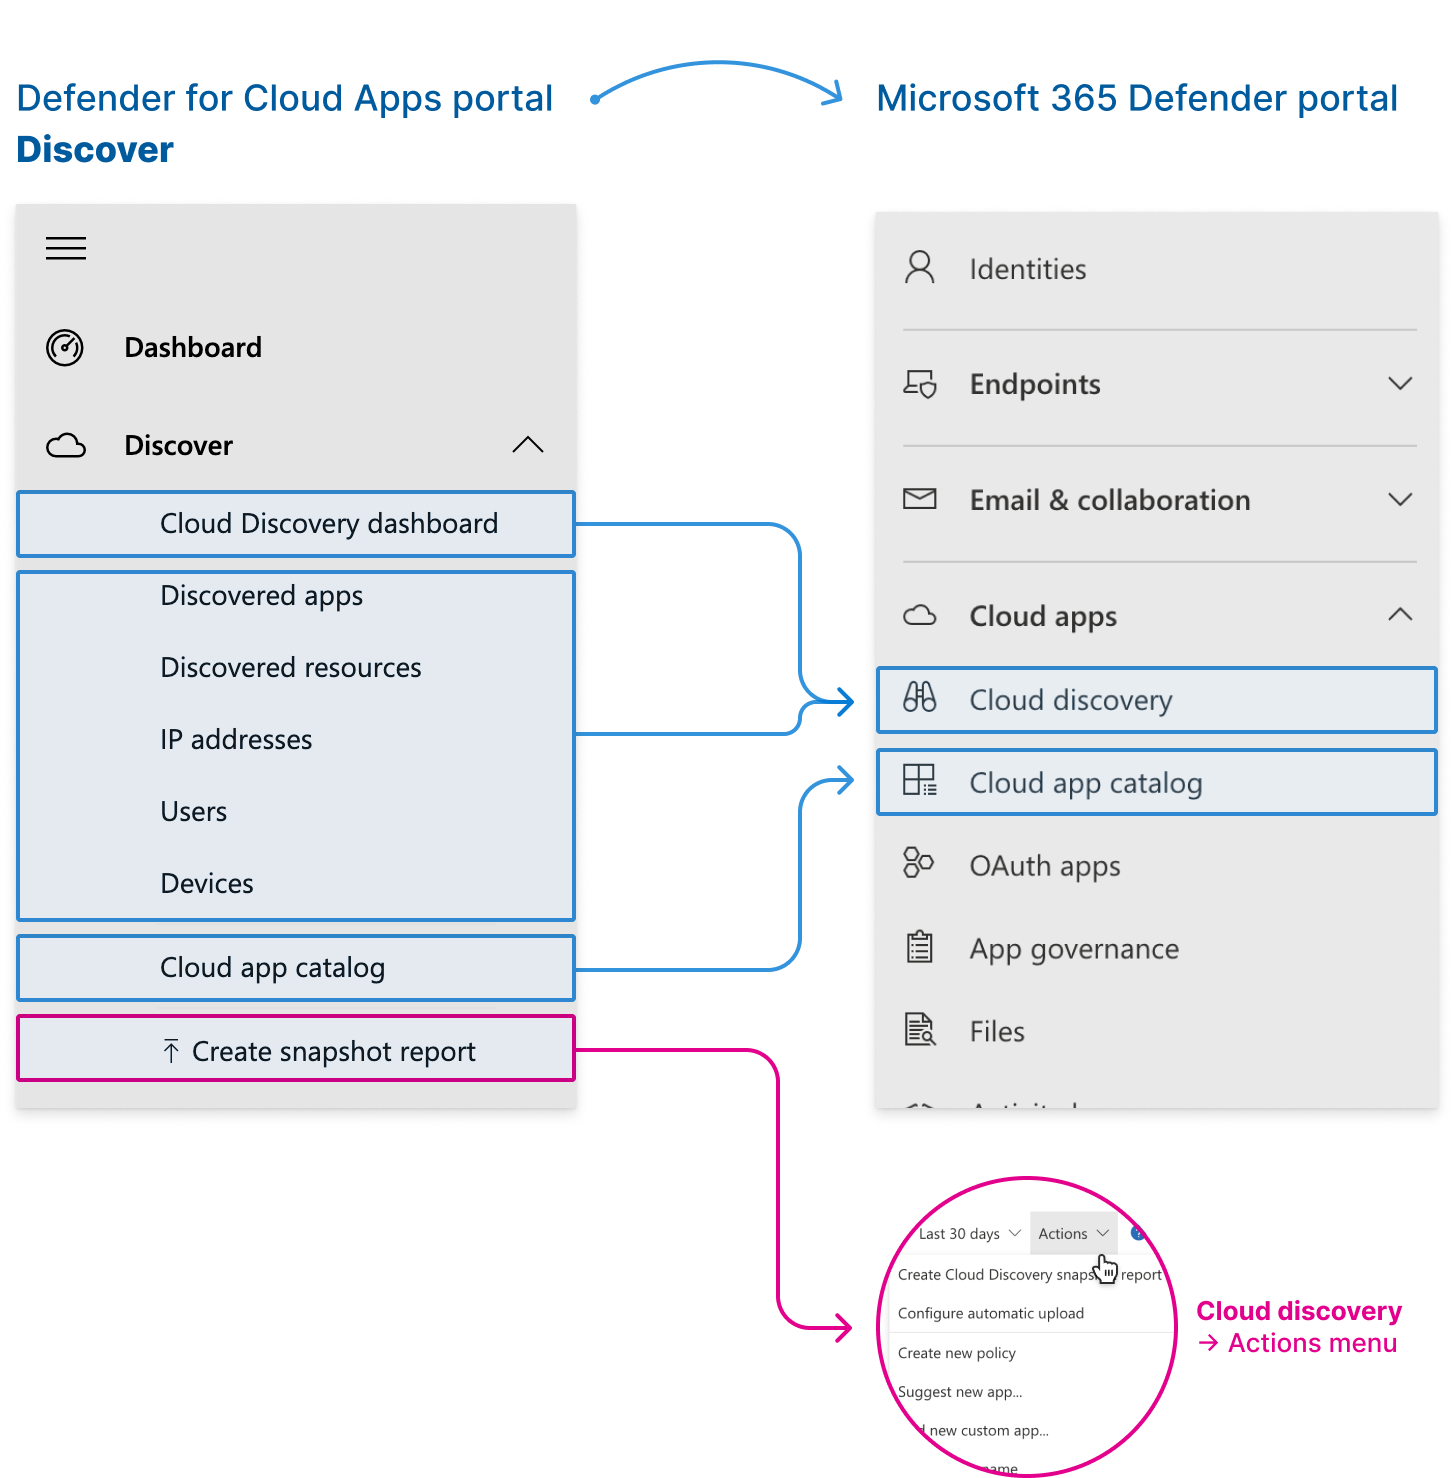 Die neuen Speicherorte für Cloud Discovery-Features im Microsoft 365 Defender-Portal